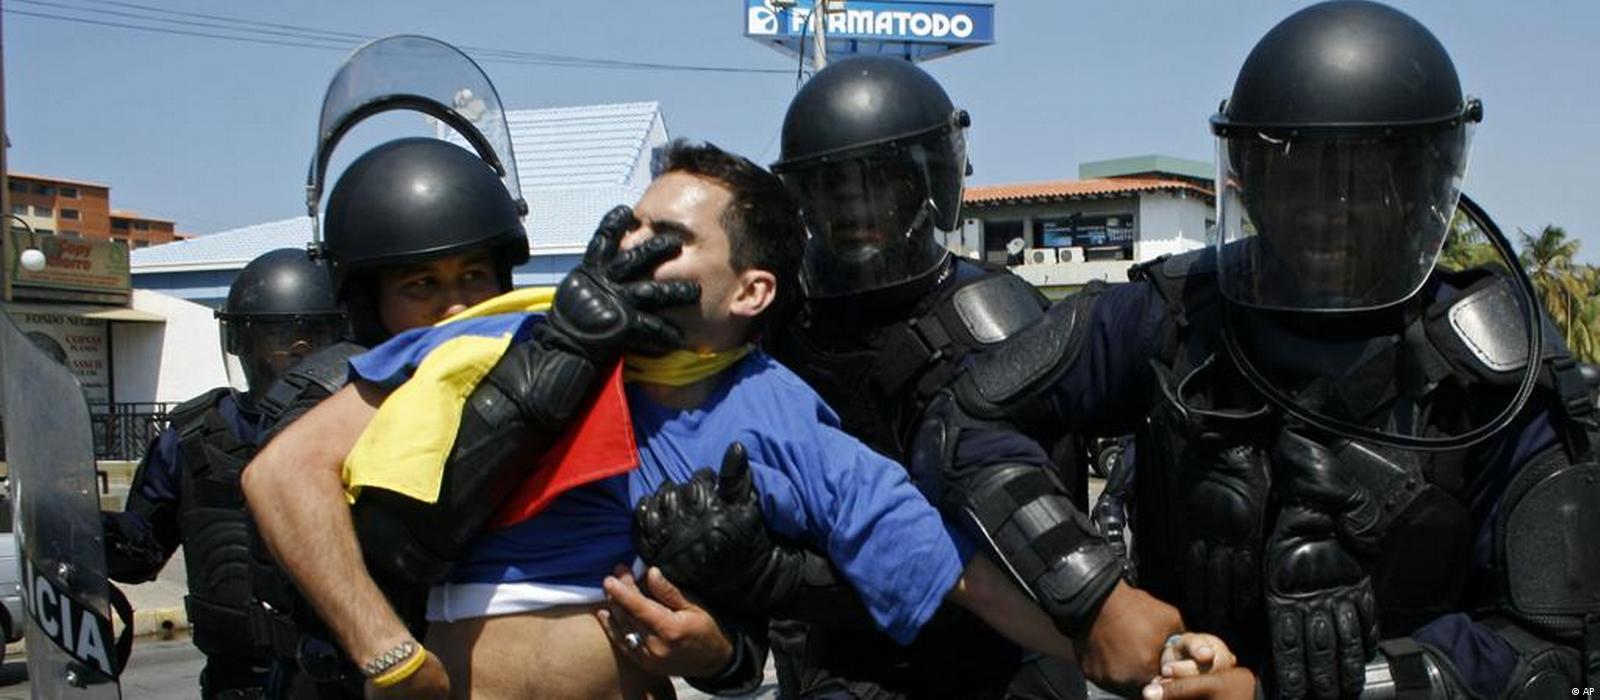 Se teme que violencia empañe comicios venezolanos – DW – 18/11/2015